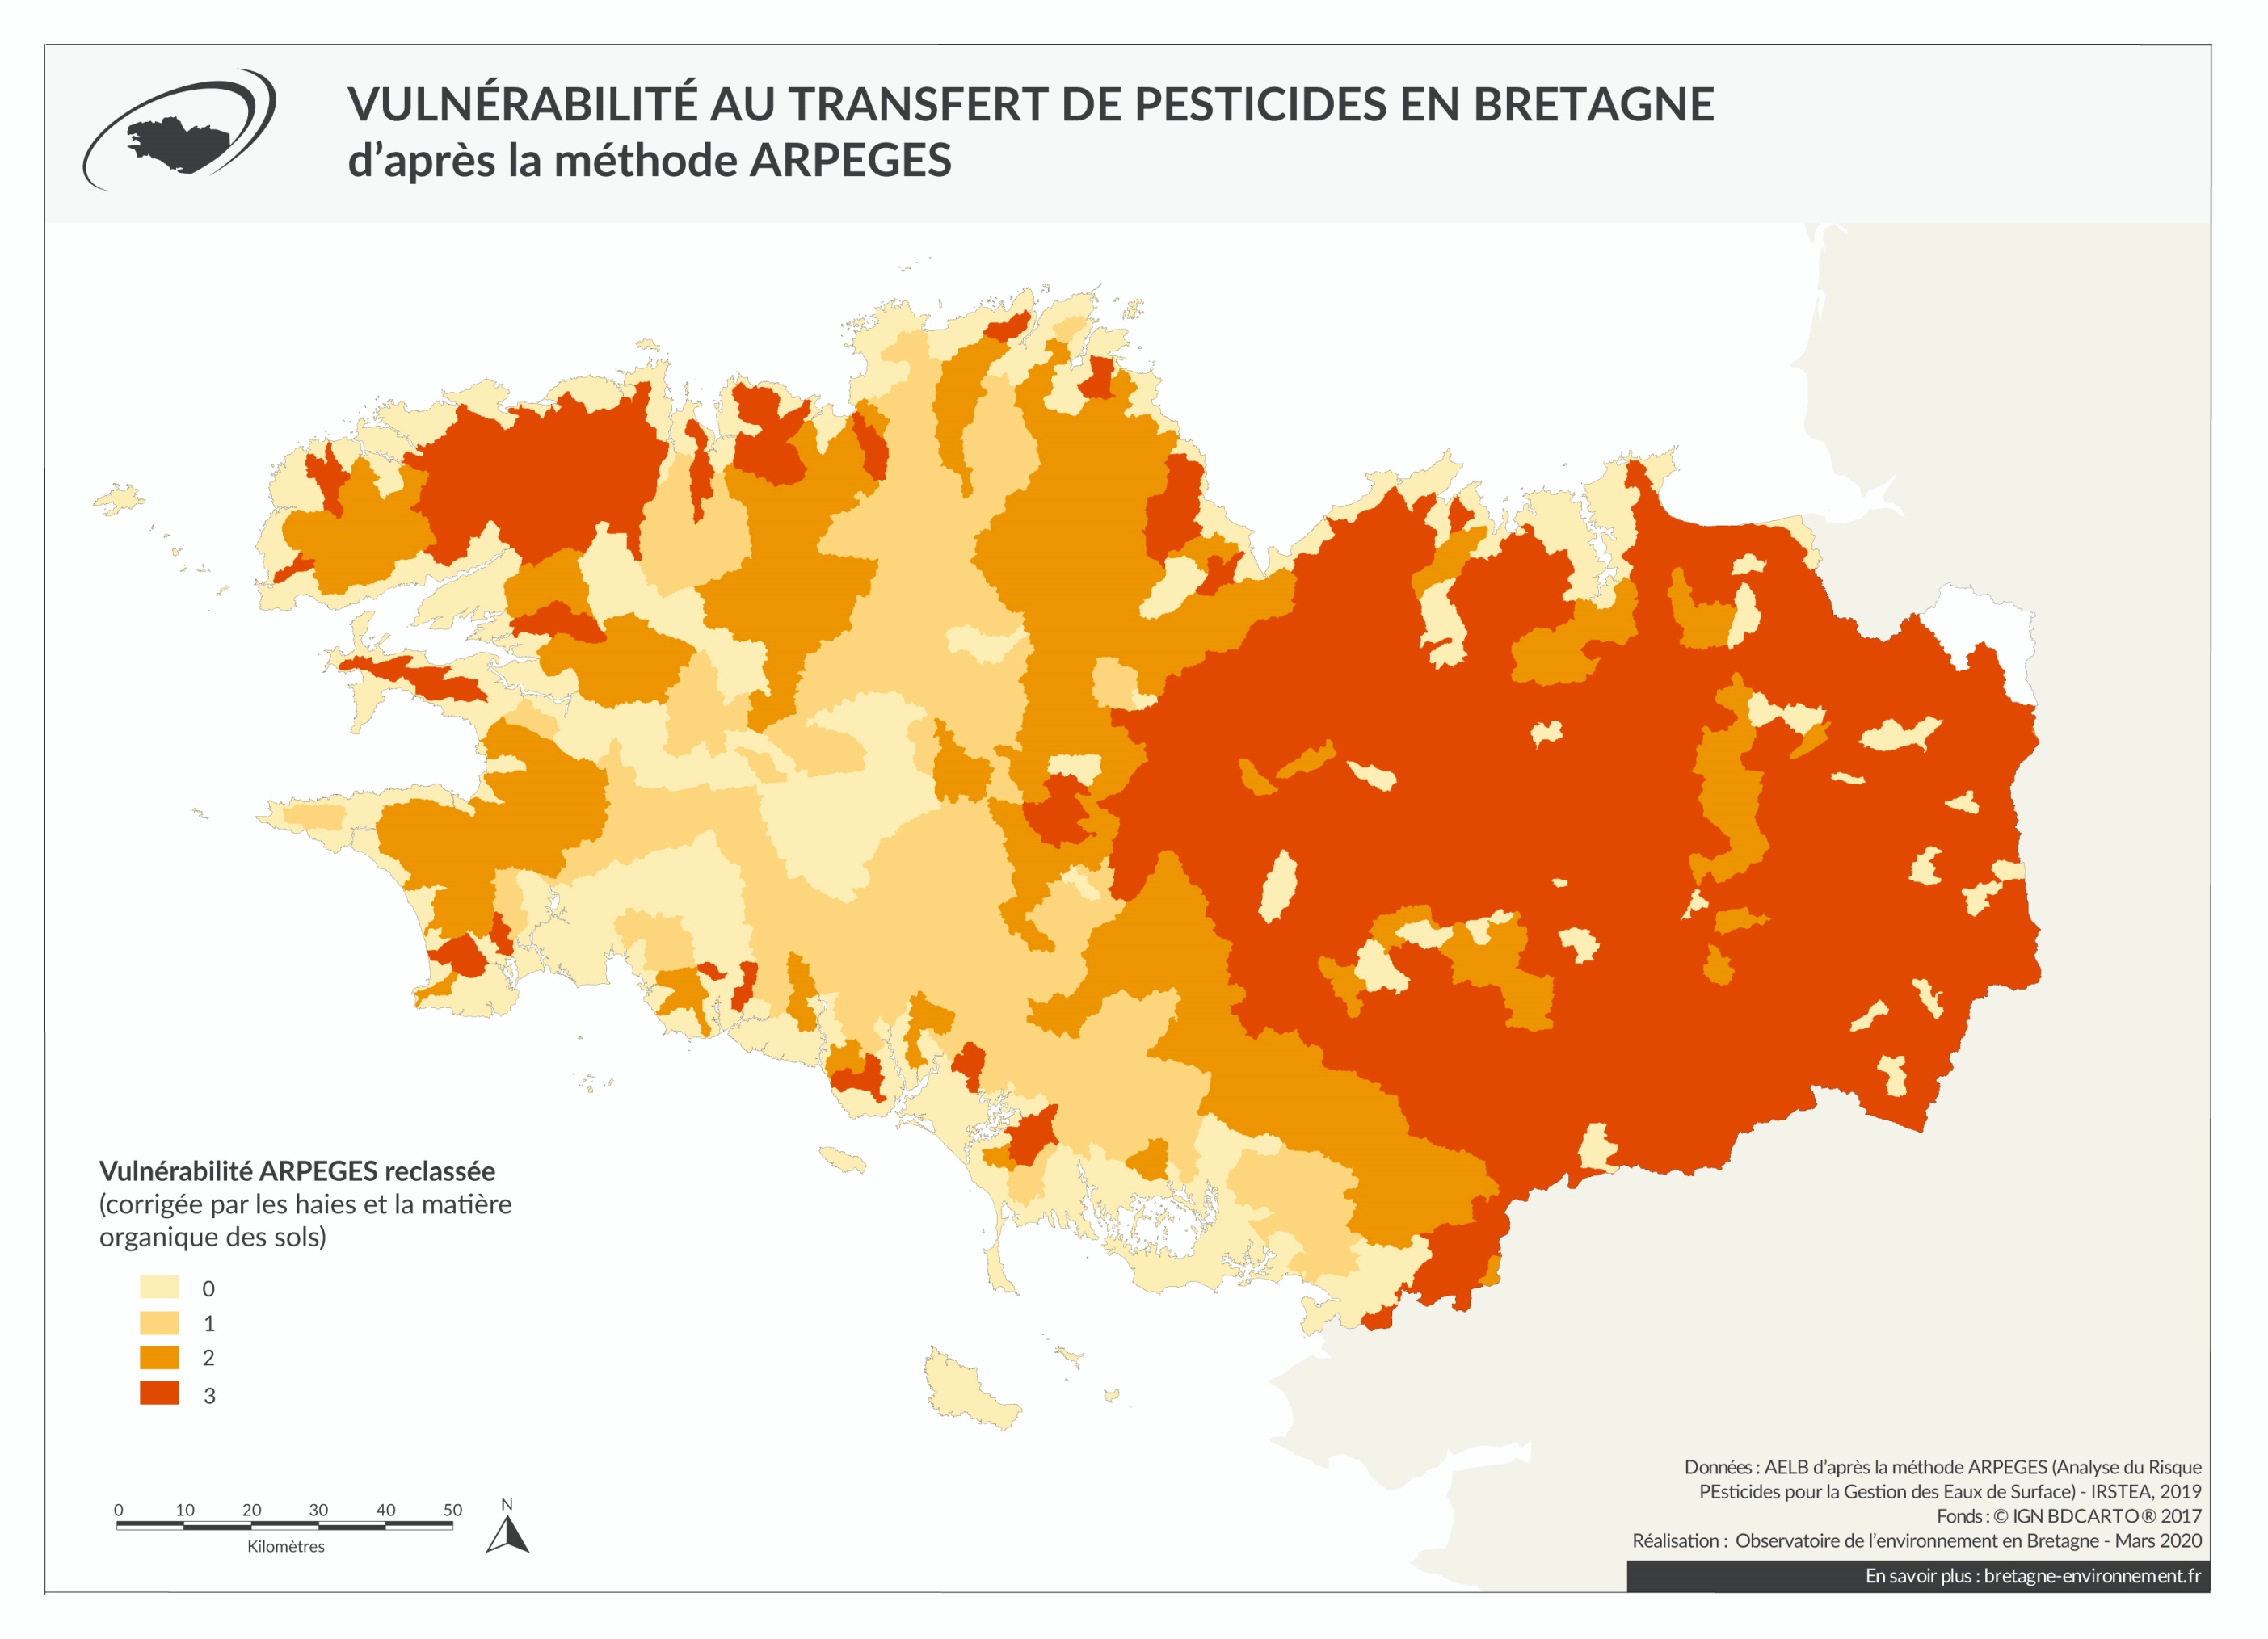 Vulnérabilité au transfert de pesticides en Bretagne d'après la méthode ARPEGES